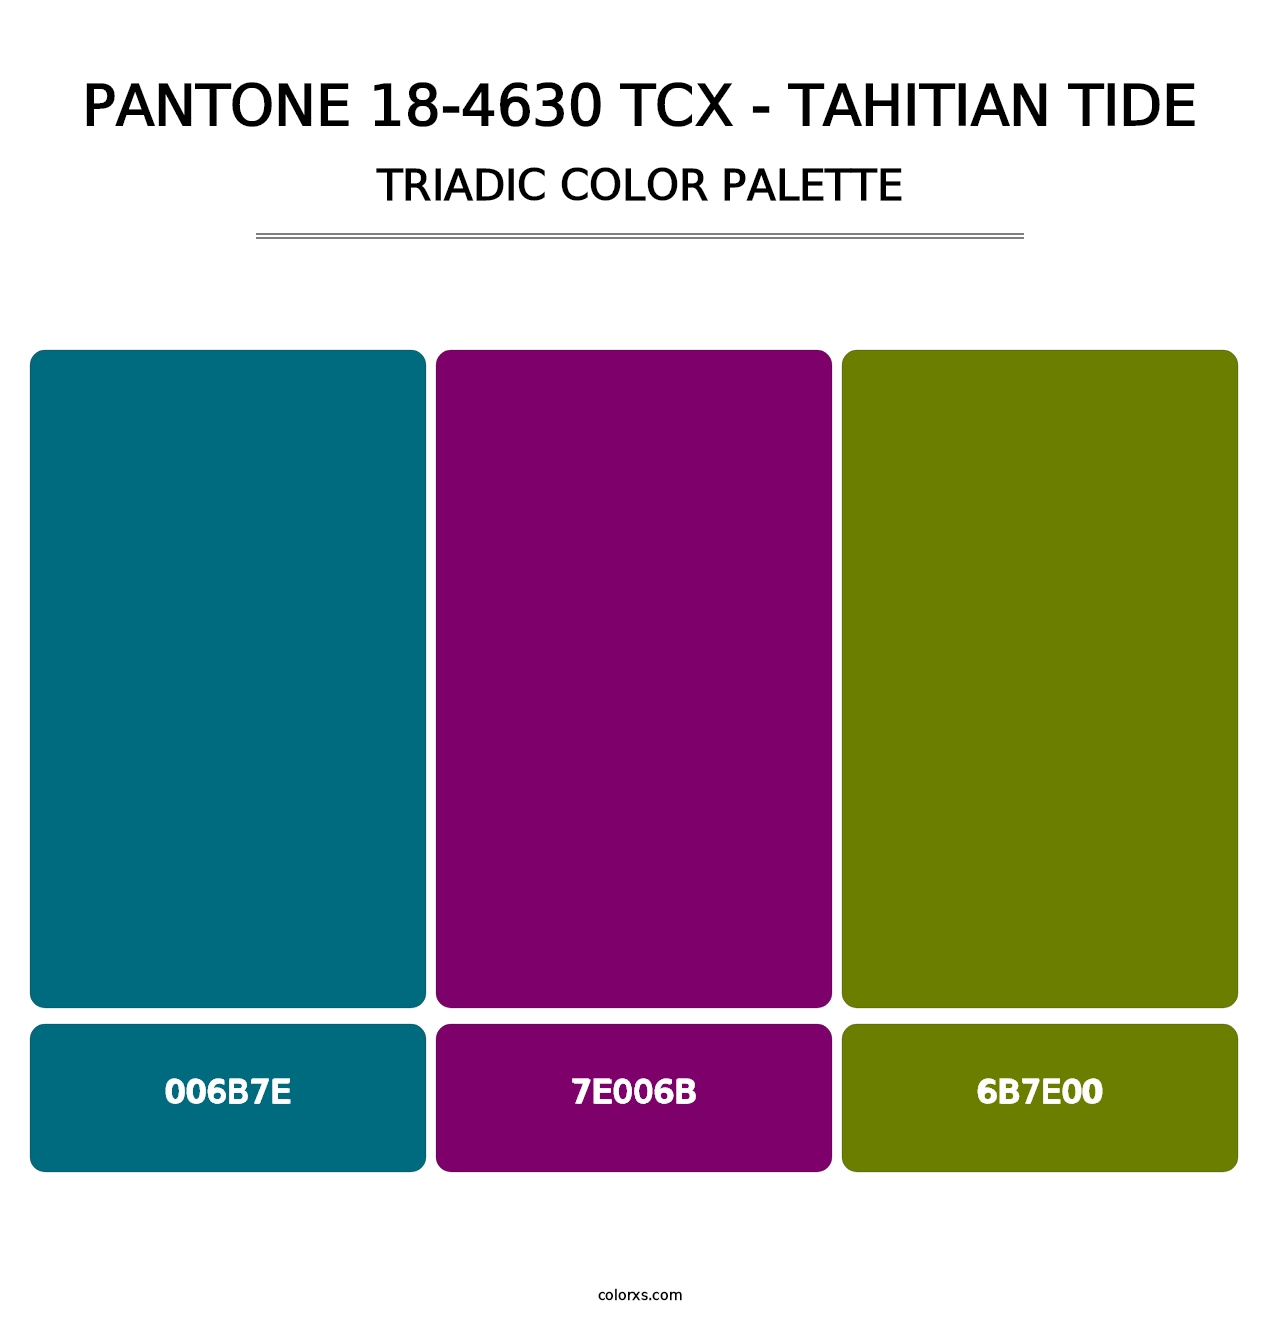 PANTONE 18-4630 TCX - Tahitian Tide - Triadic Color Palette